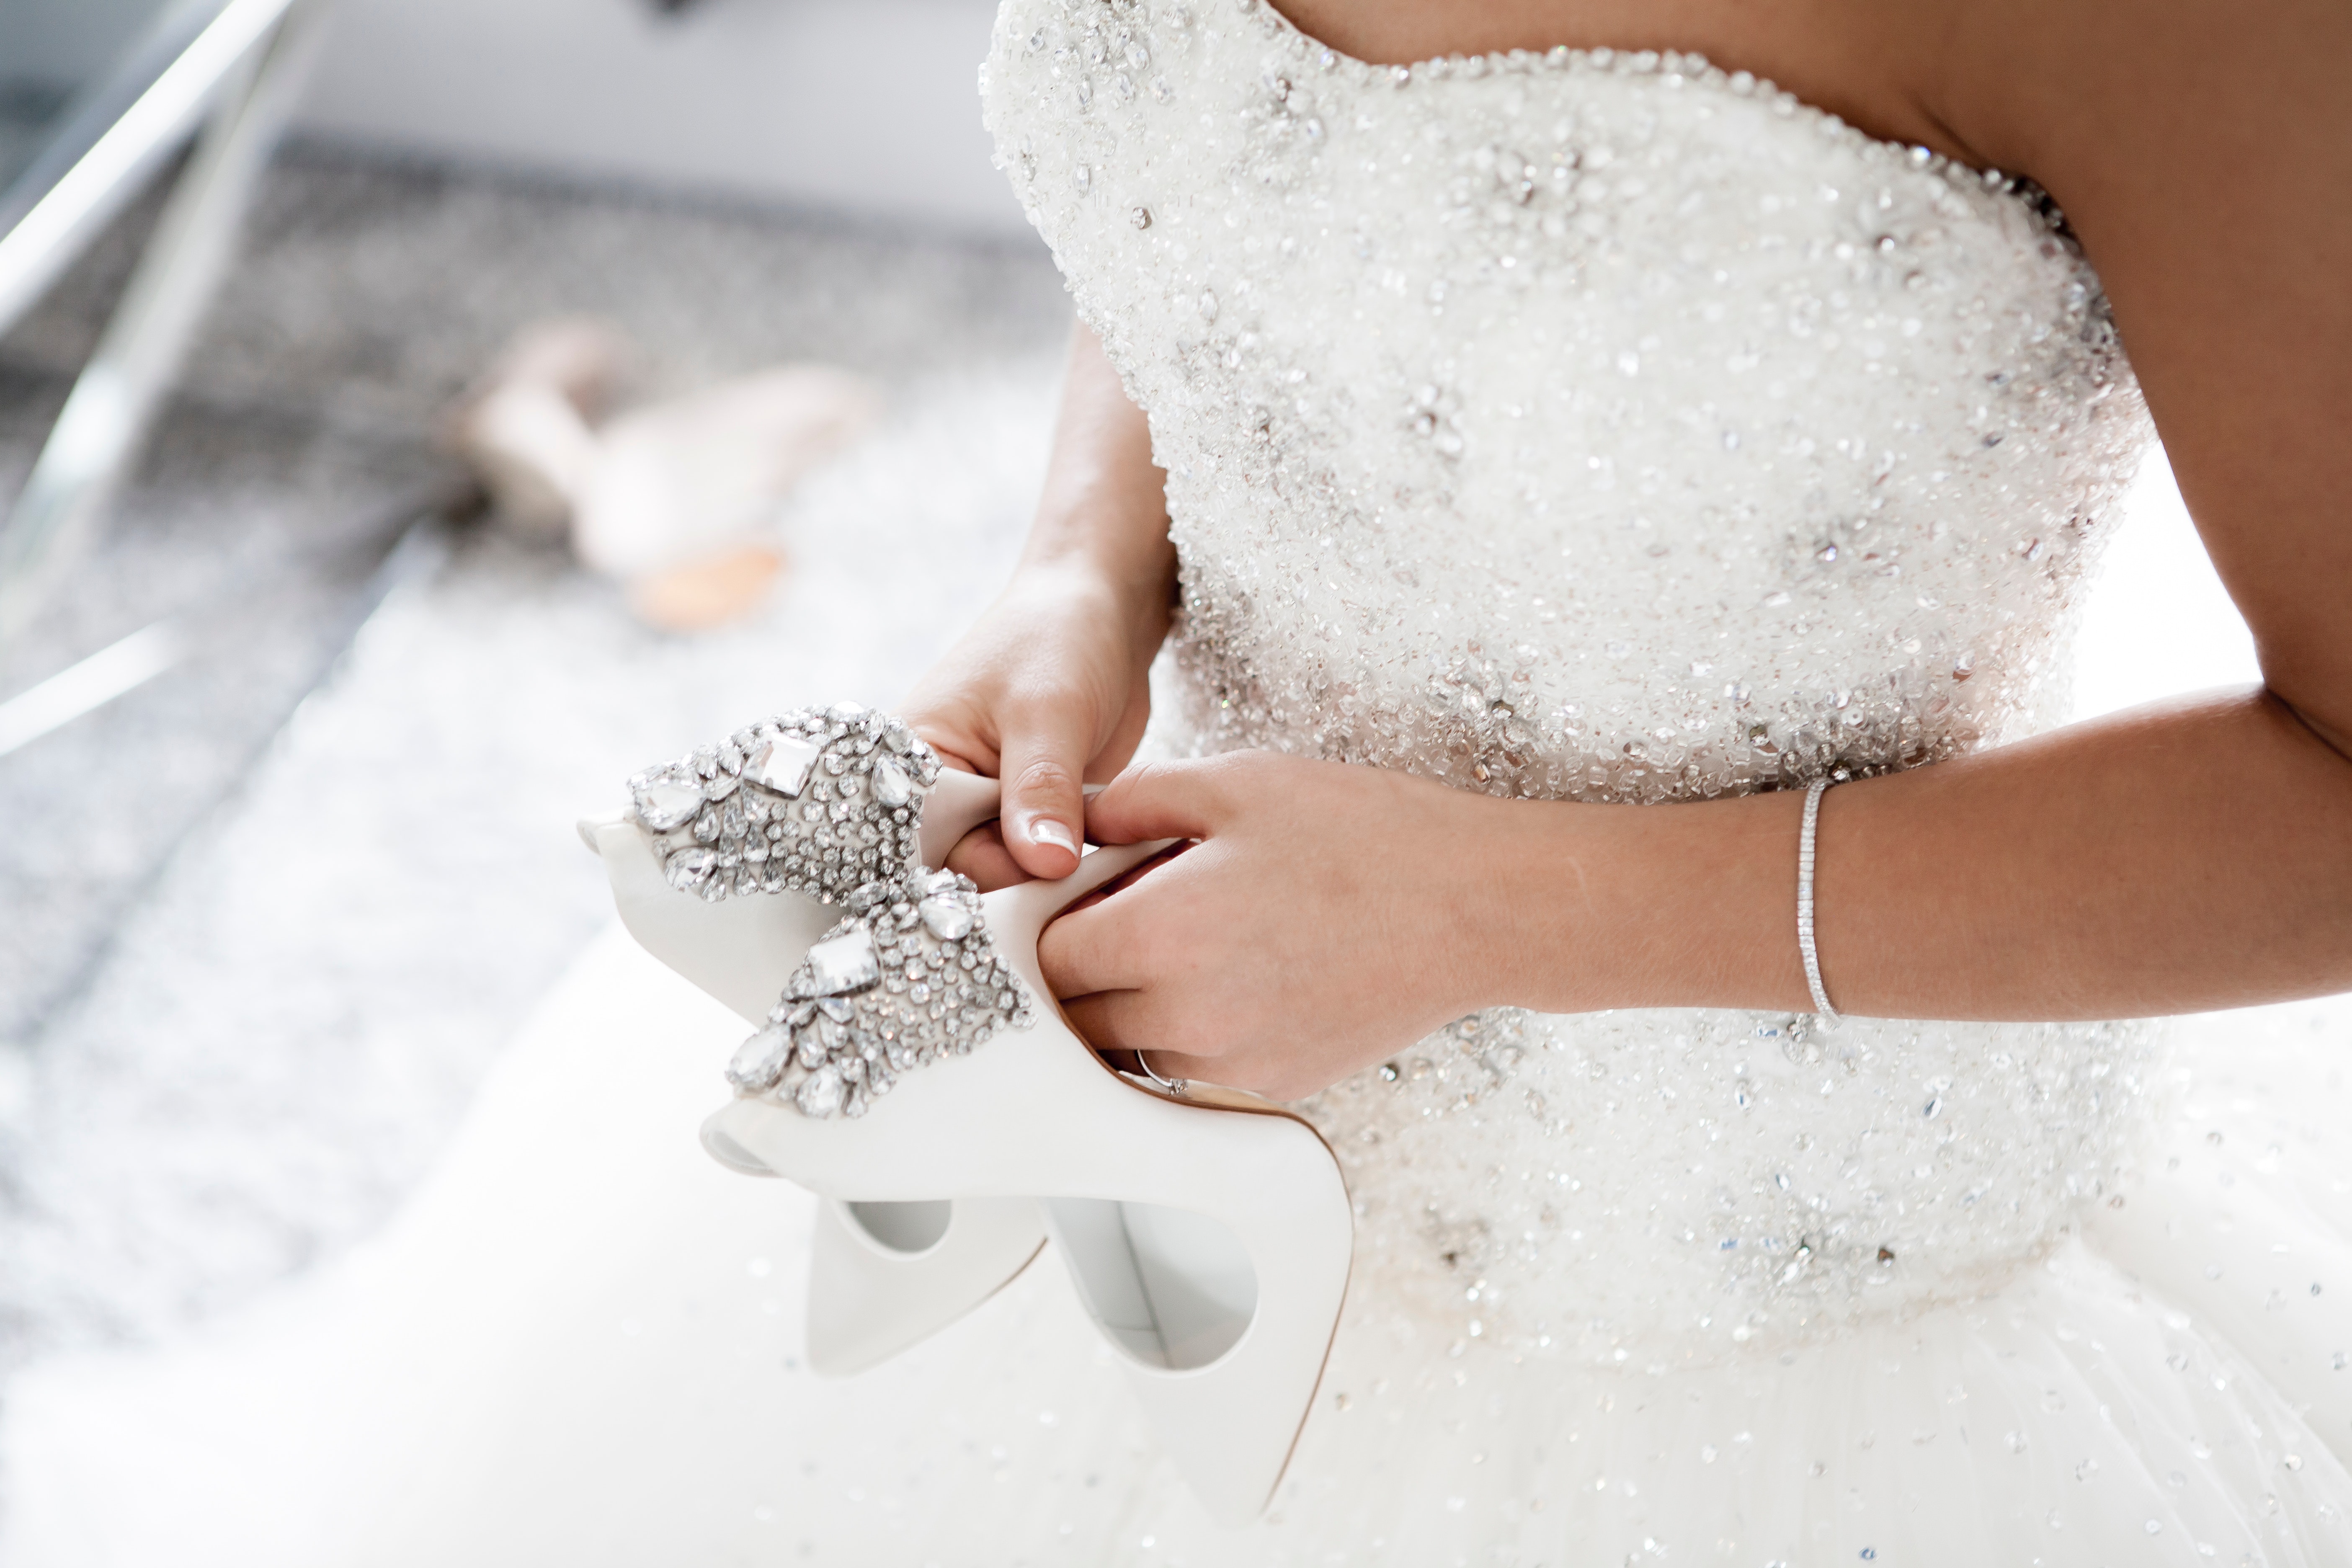 Bride holding her heels | Source: Pexels